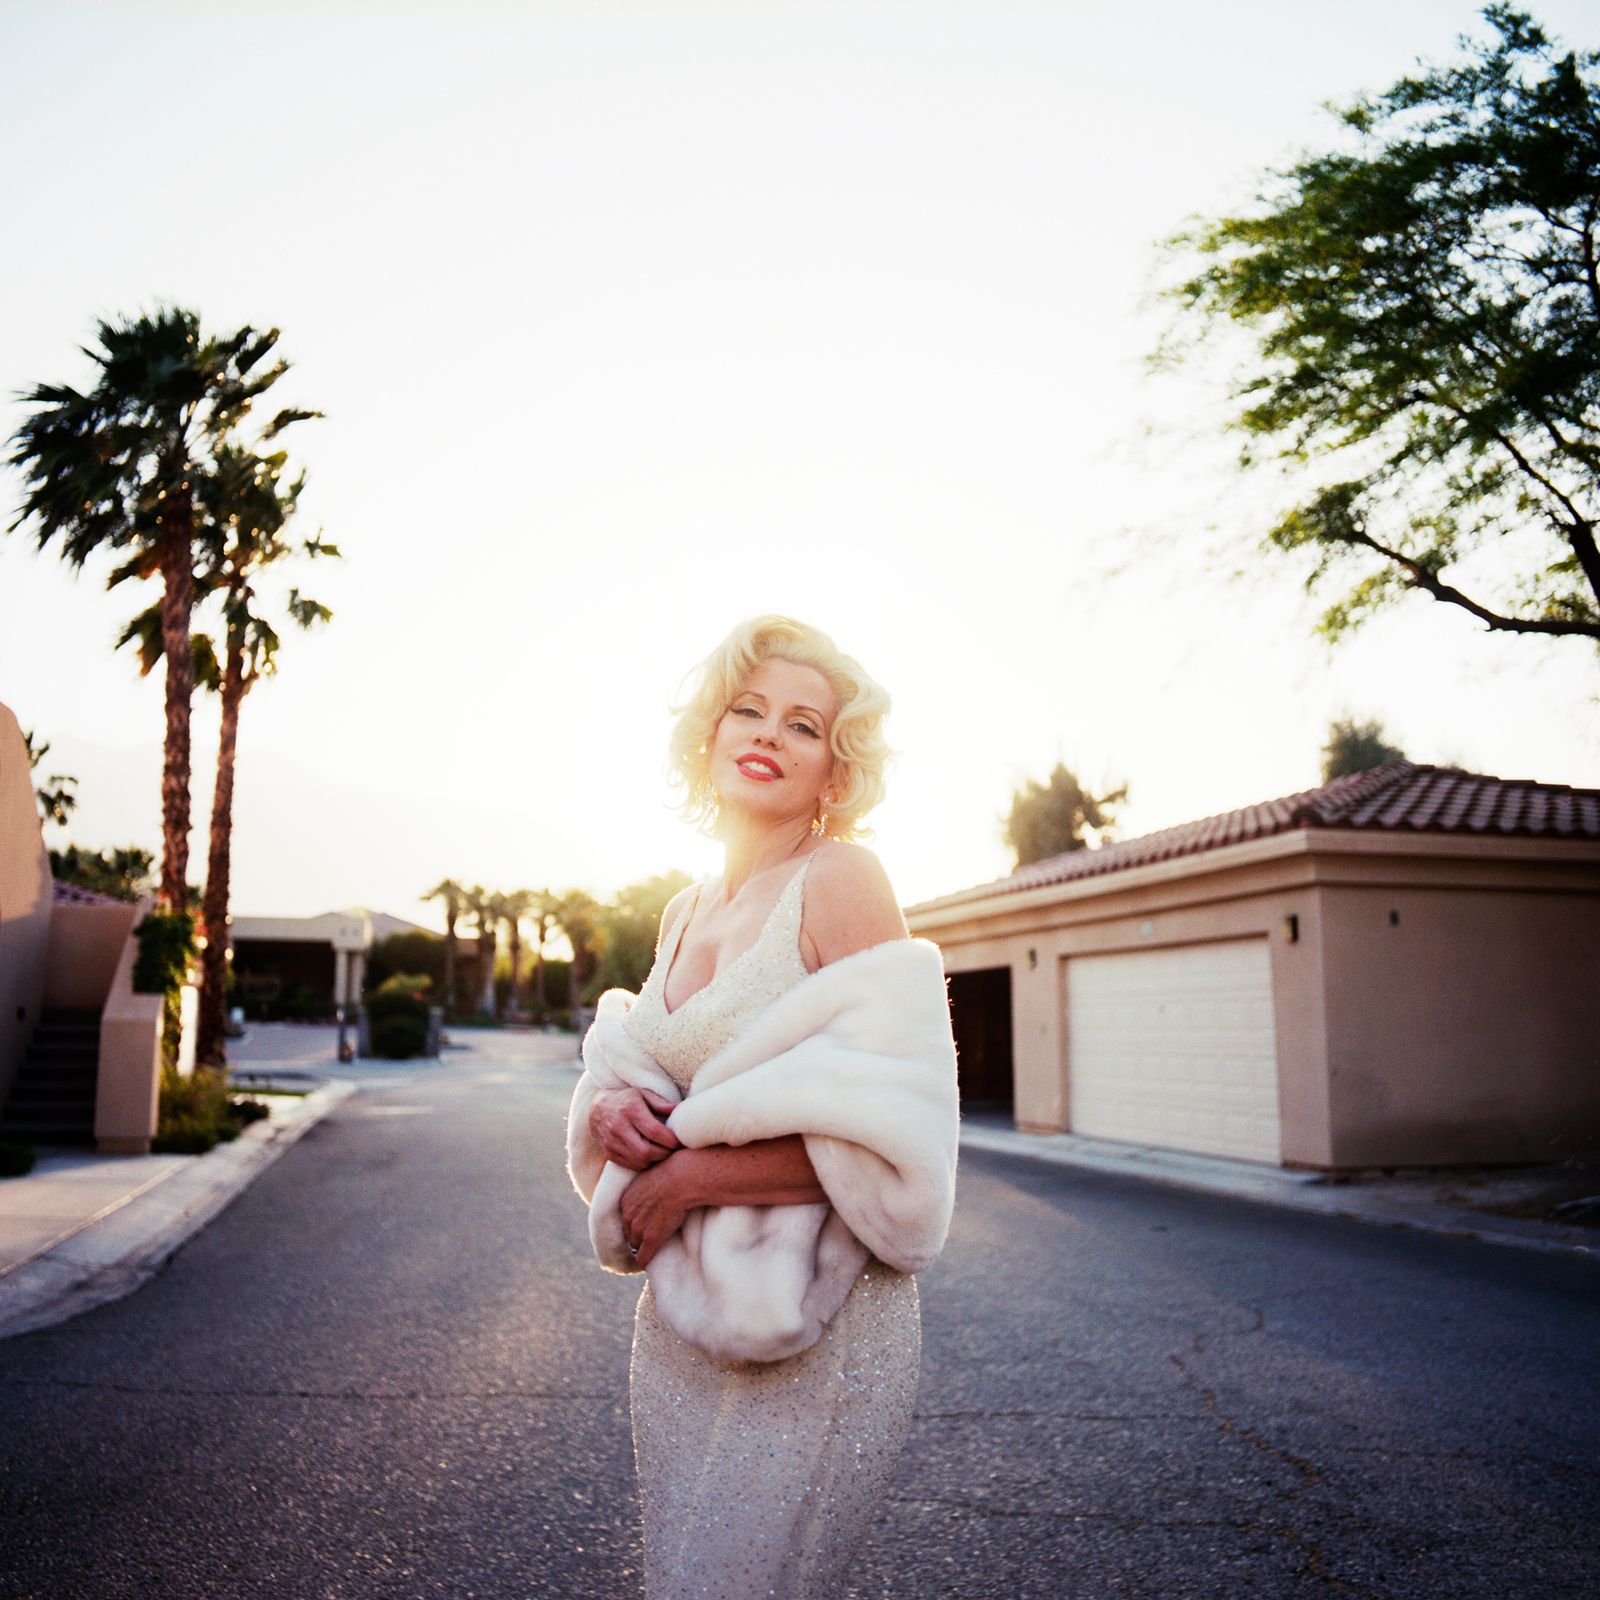 © Emily Berl - Gailyn as Marilyn Monroe, Palm Springs, CA, 2013.